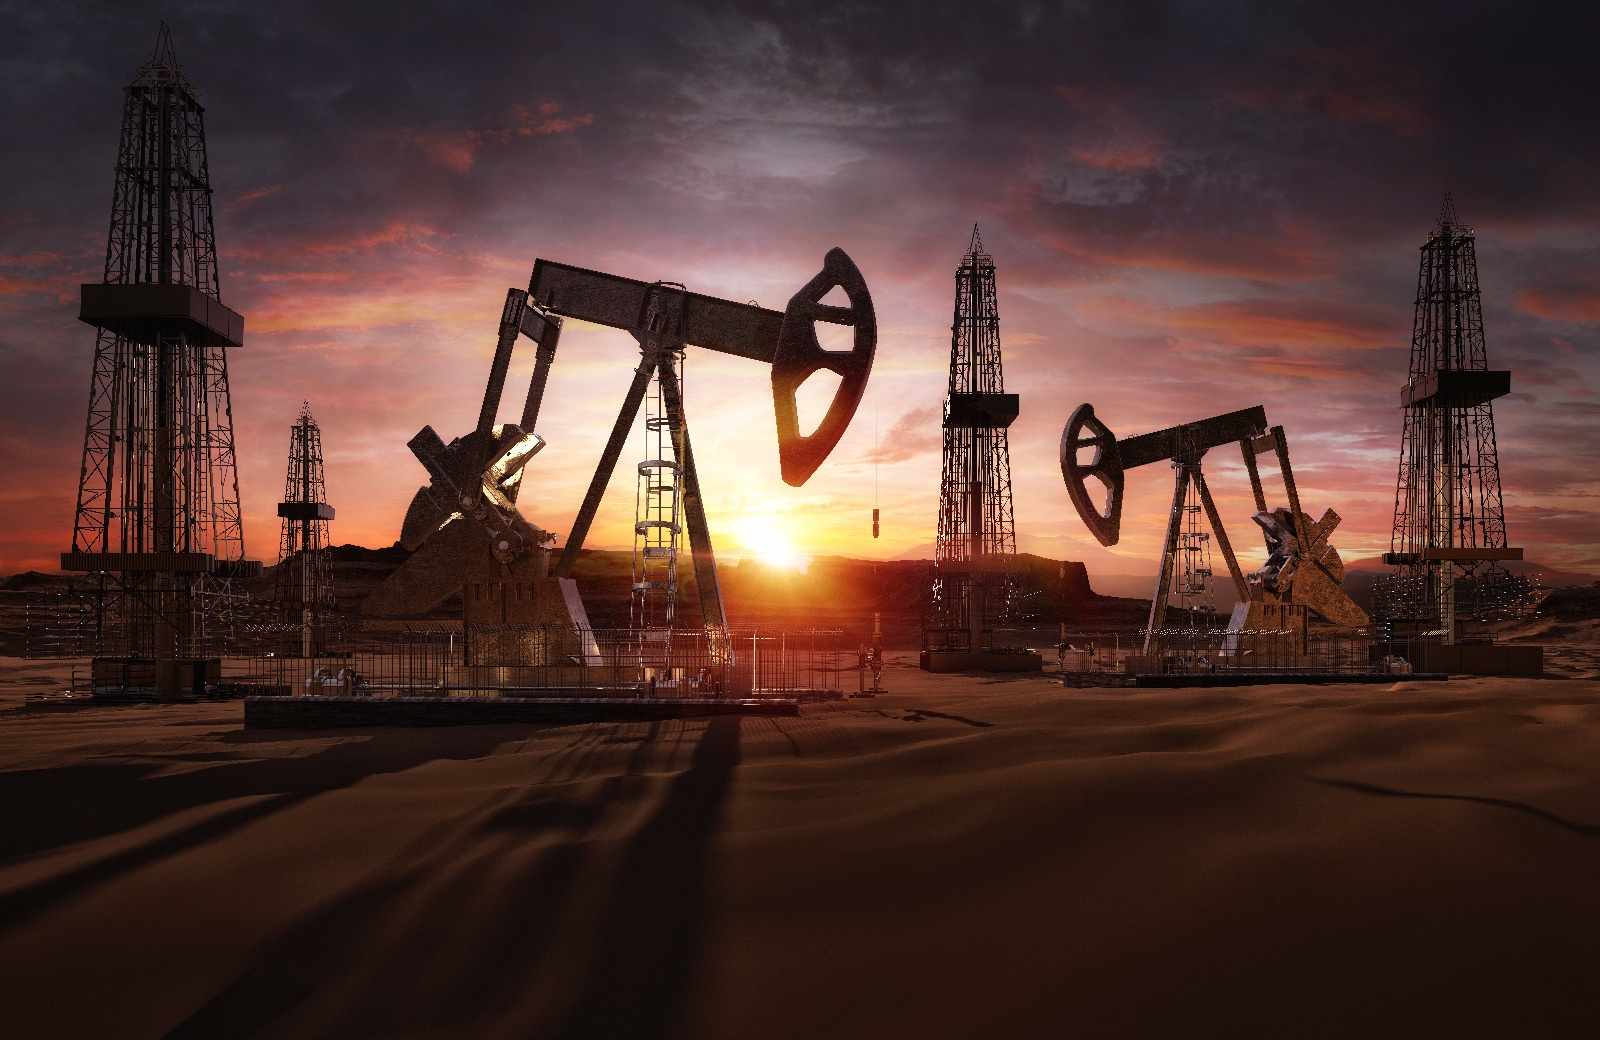 opec oil output impasse postpones